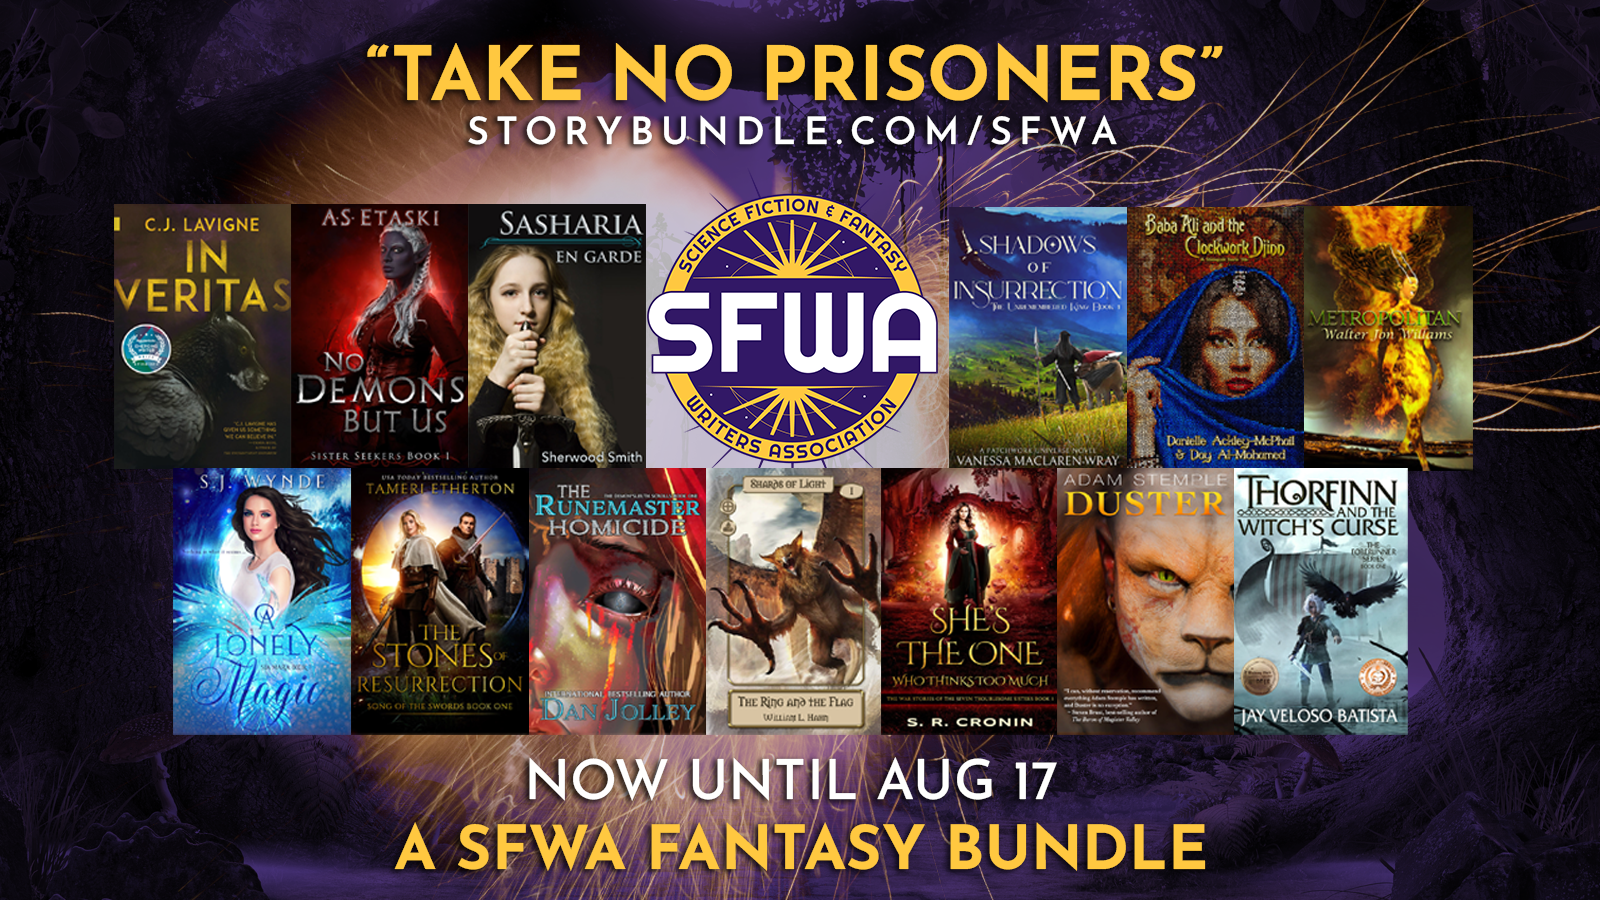 SFWA “Take No Prisoners” StoryBundle